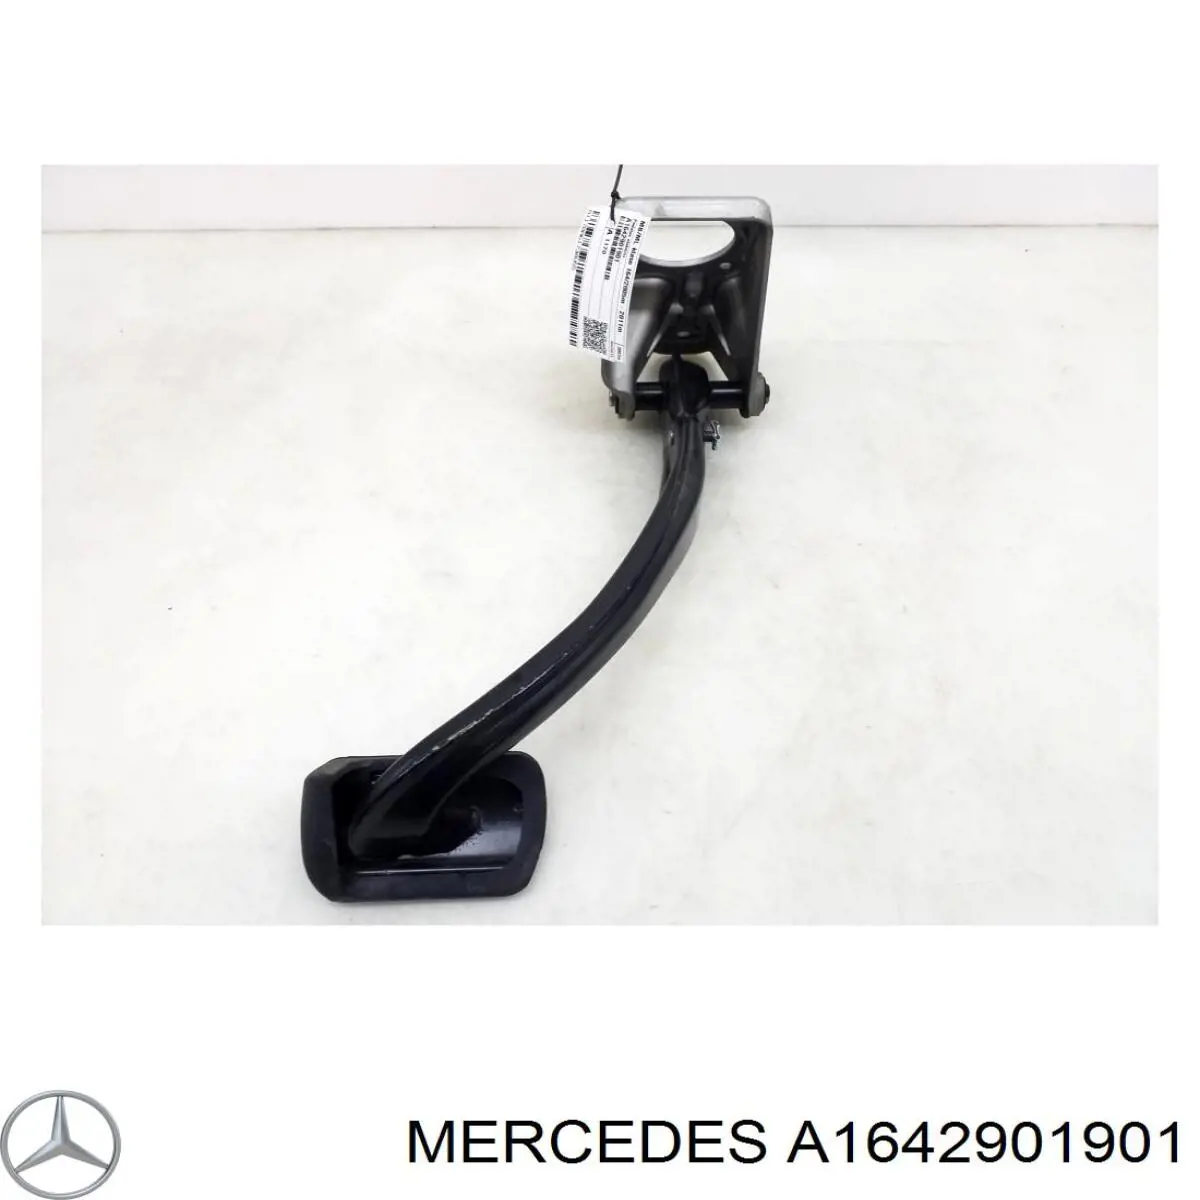 A1642901901 Mercedes pedal de freno